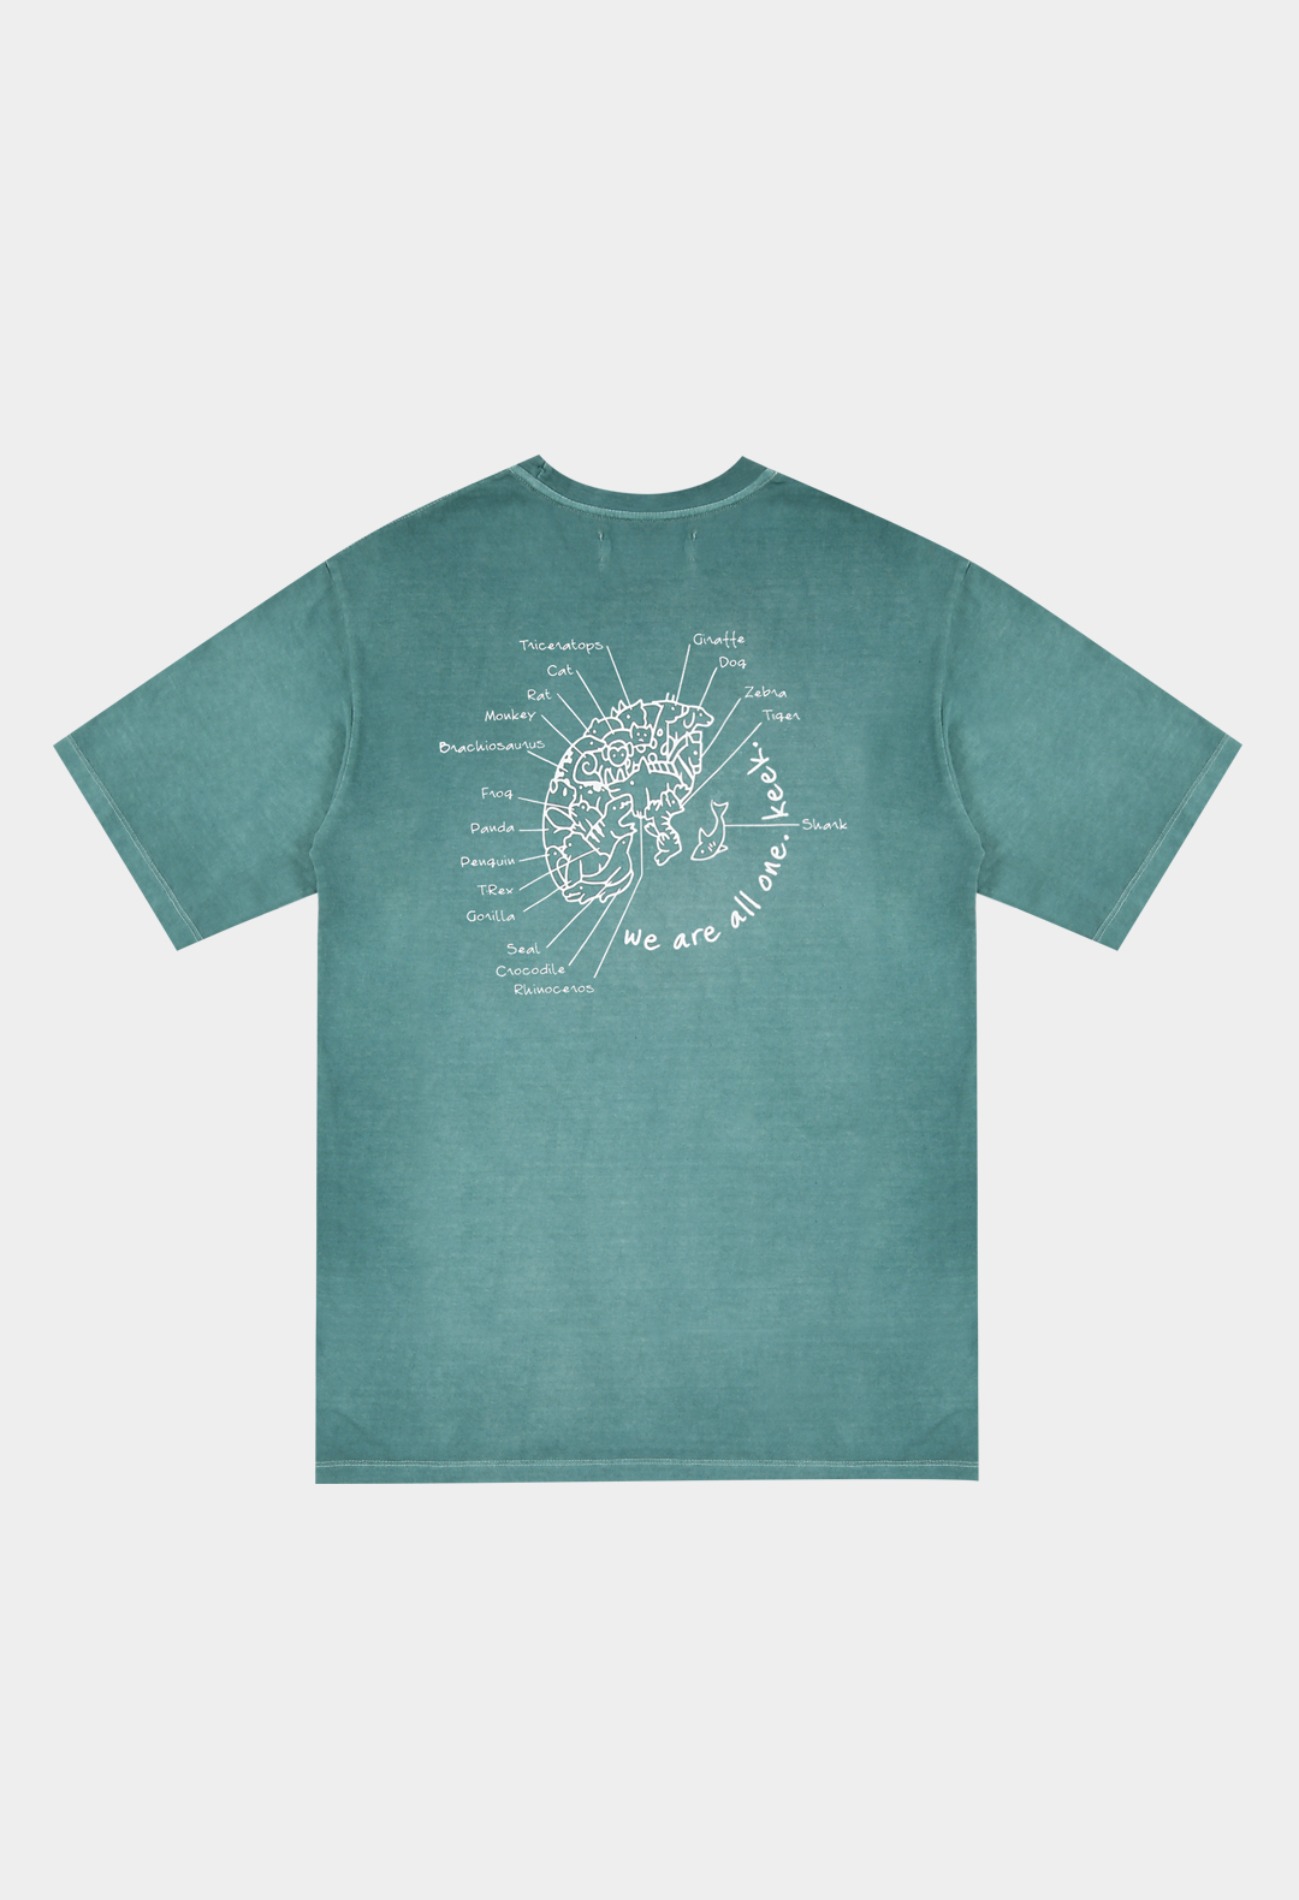 keek Washing Earth T-shirts - Mint 스트릿패션 유니섹스브랜드 커플시밀러룩 남자쇼핑몰 여성의류쇼핑몰 후드티 힙색